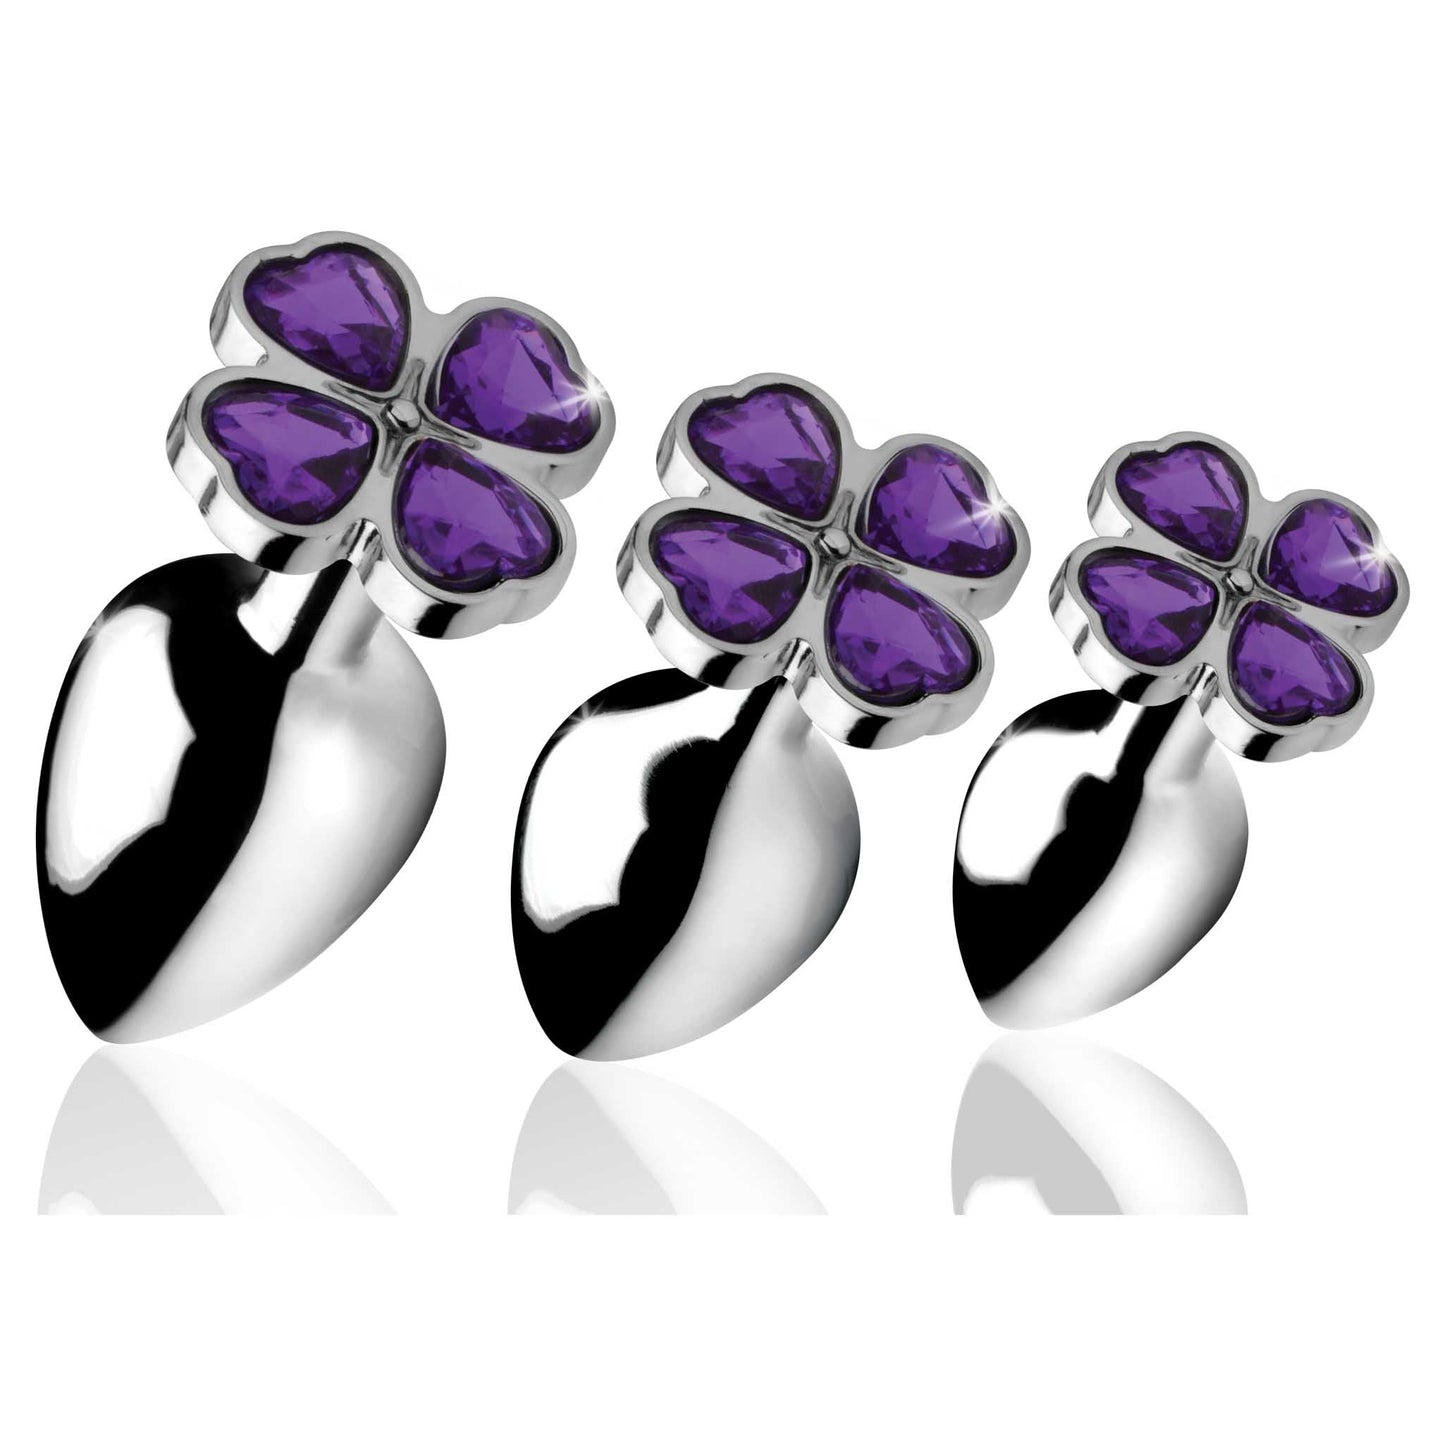 Booty Sparks Violet Flower Gem Anal Plug Set - Silver